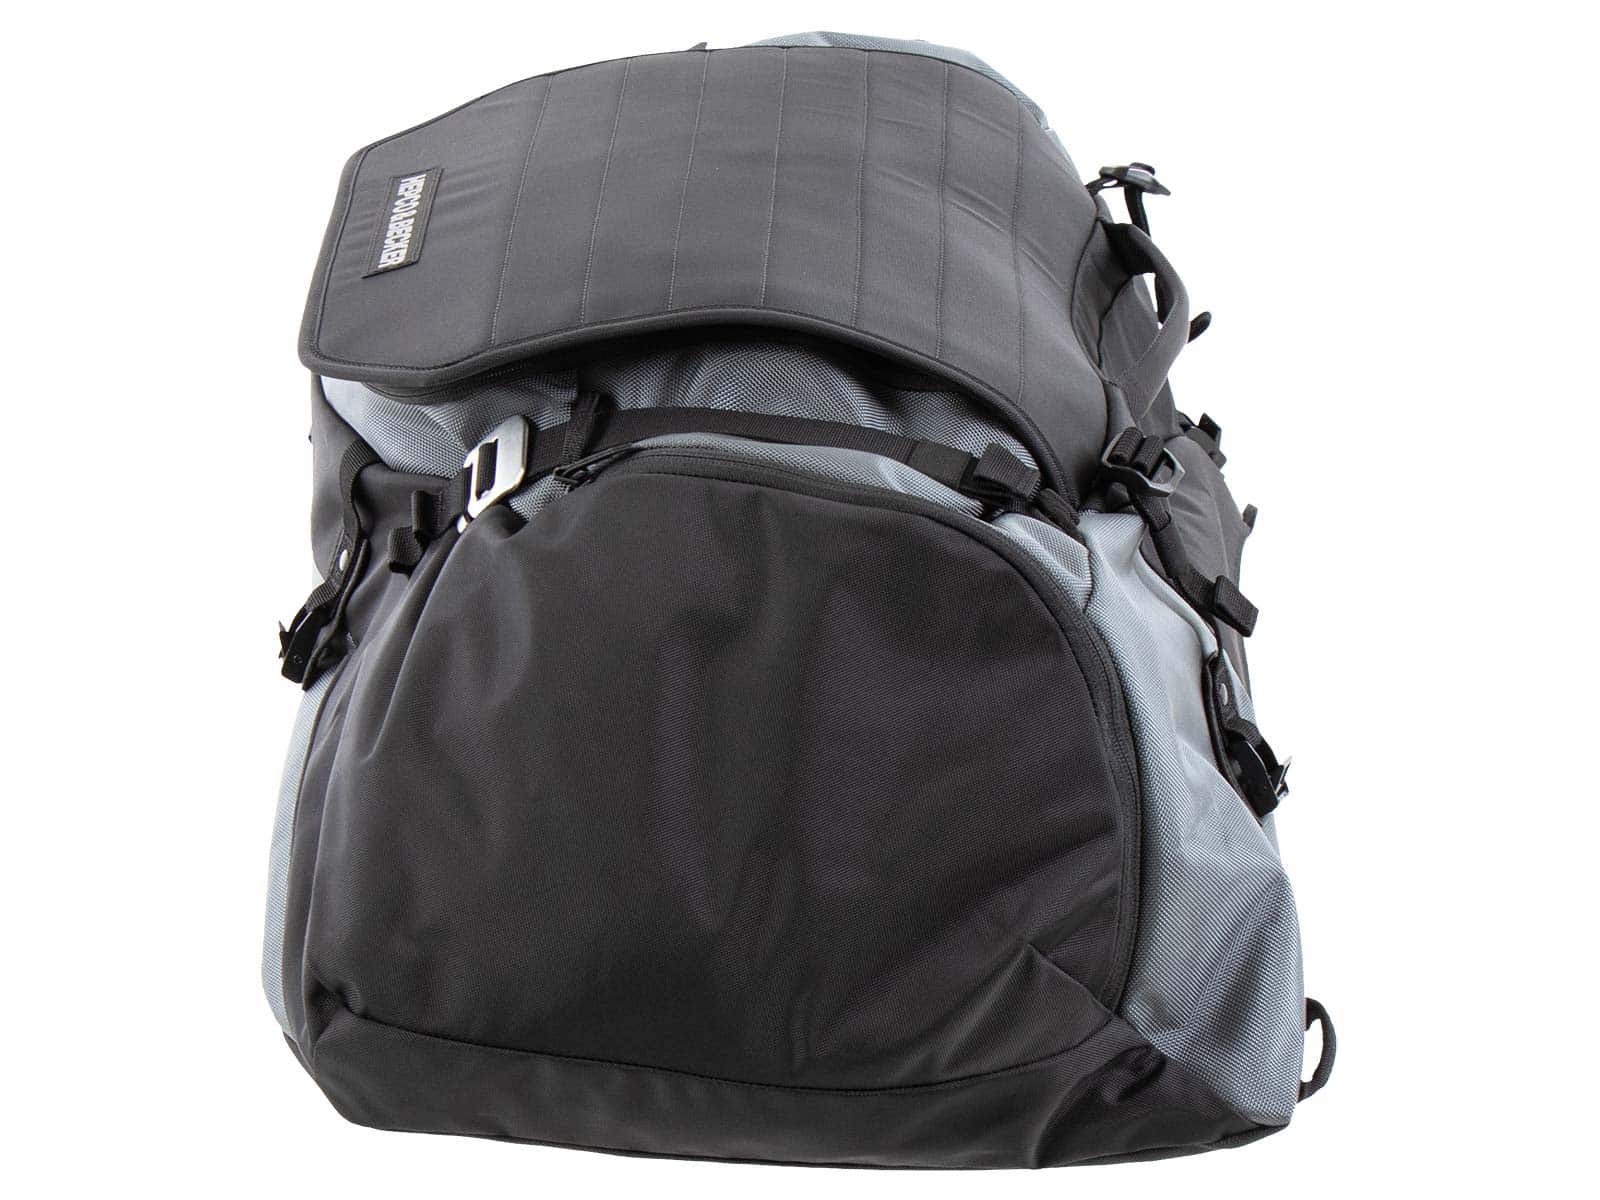 Xtravel rear bag XL 50 ltr.